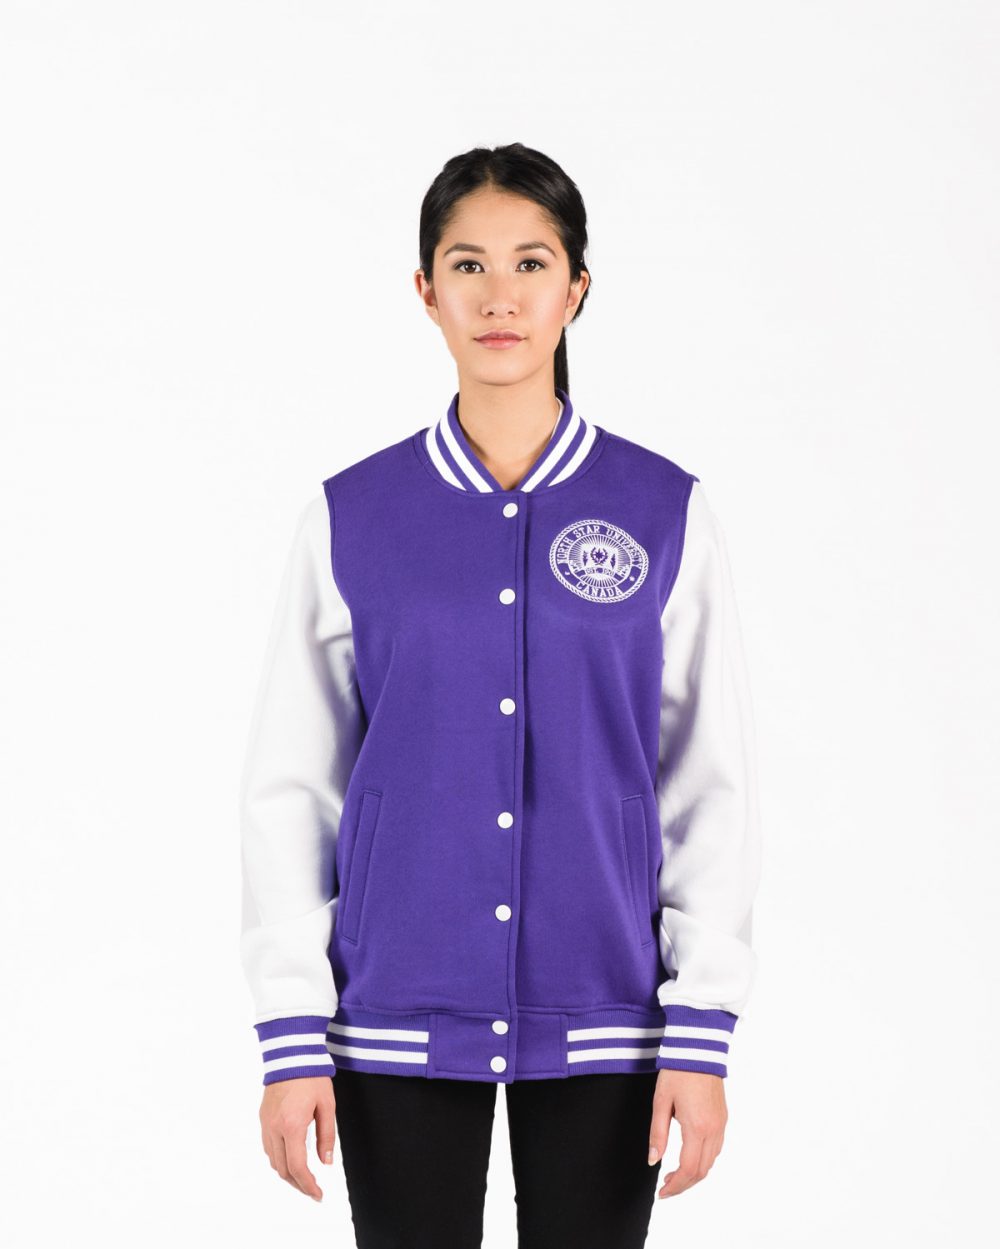 Women's Fleece Letterman Jacket in Purple with White Sleeves